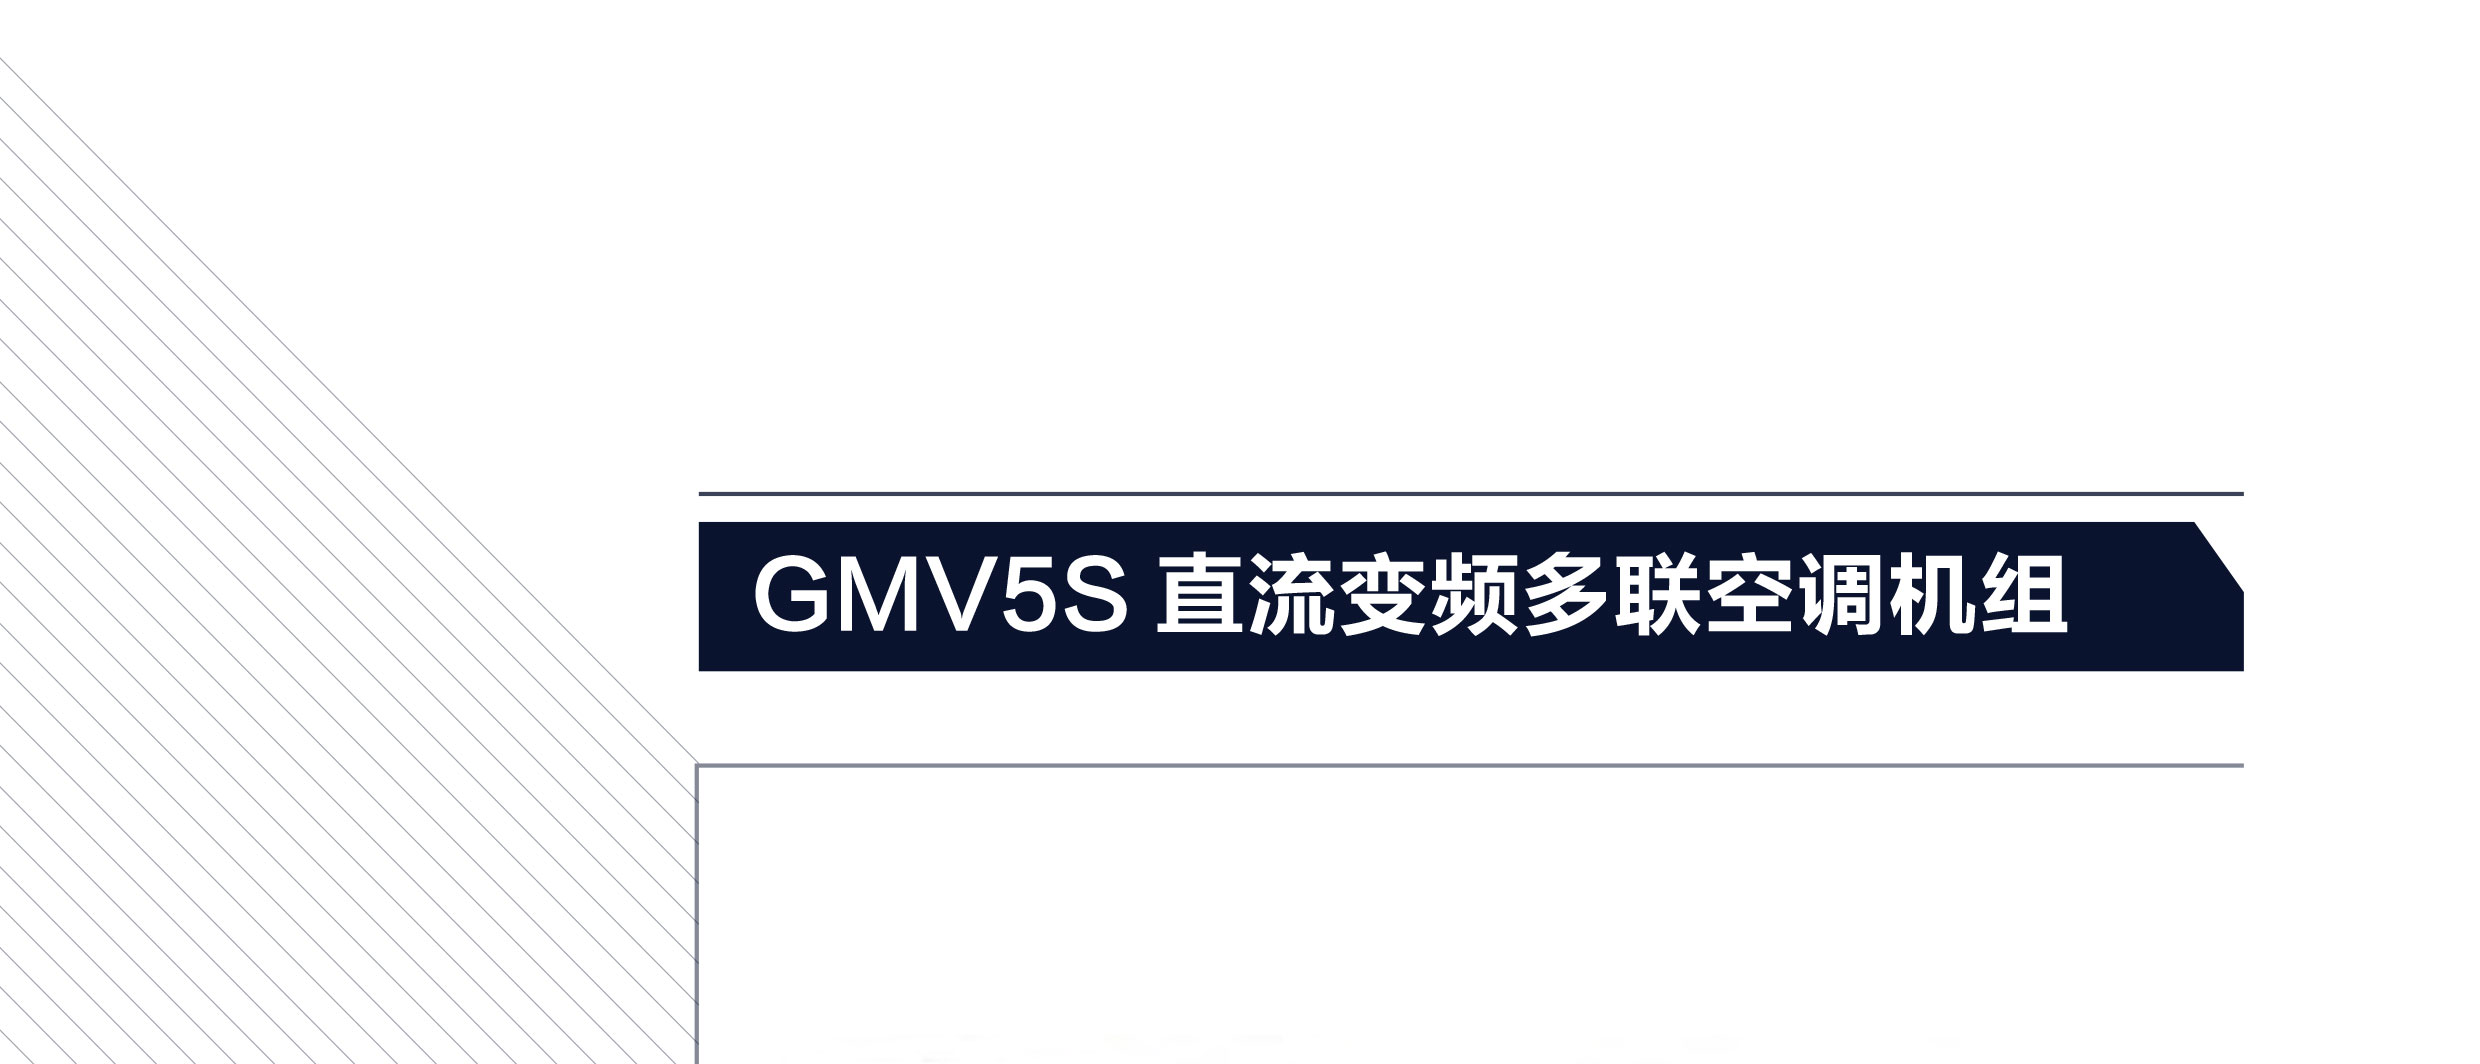 格力GMV5S全直流變頻多聯機組1.png